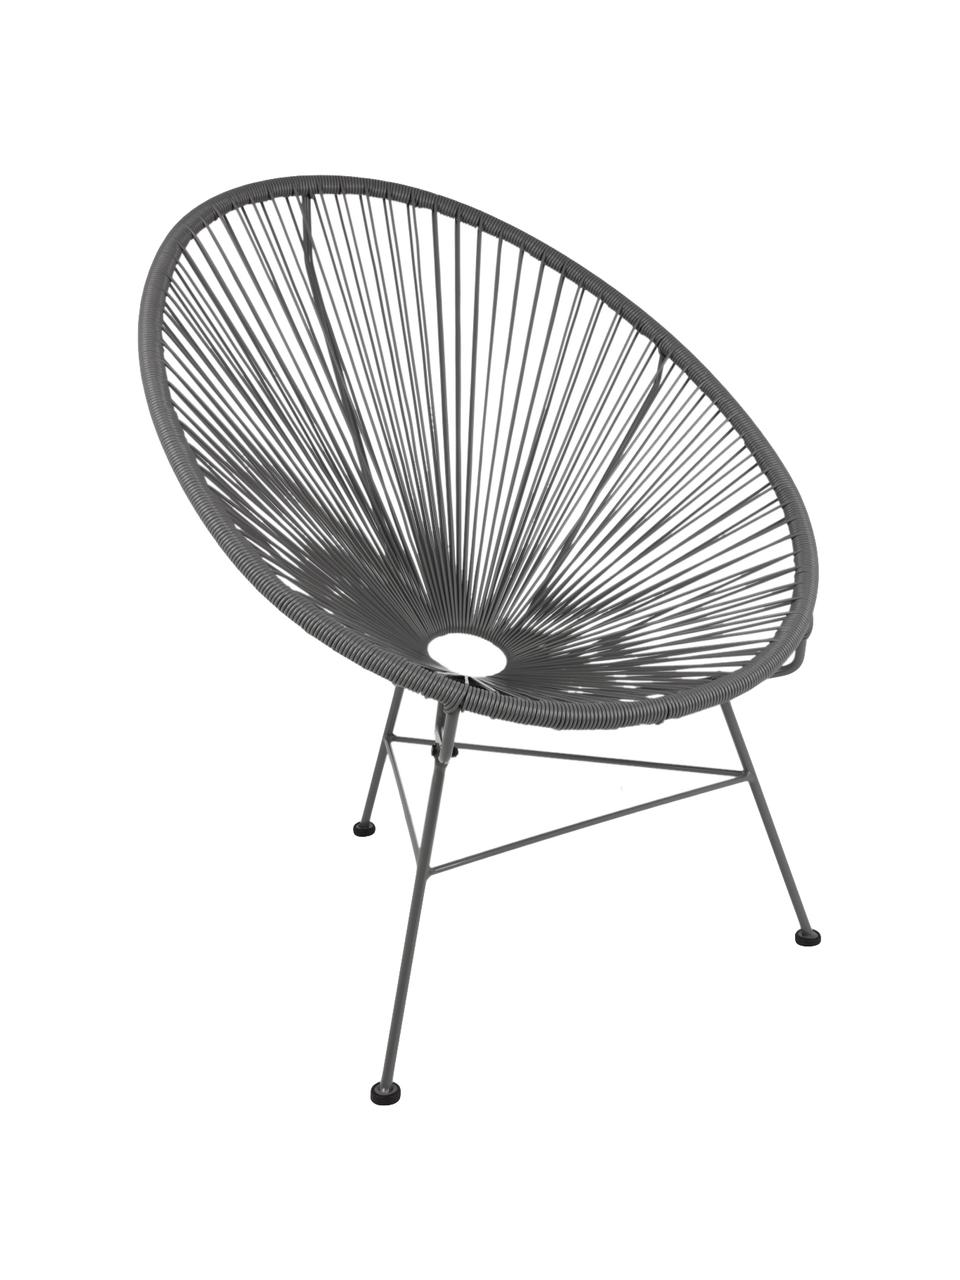 Fotel wypoczynkowy ze splotu z tworzywa sztucznego Bahia, Stelaż: metal malowany proszkowo, Ciemny szary, S 81 x G 73 cm